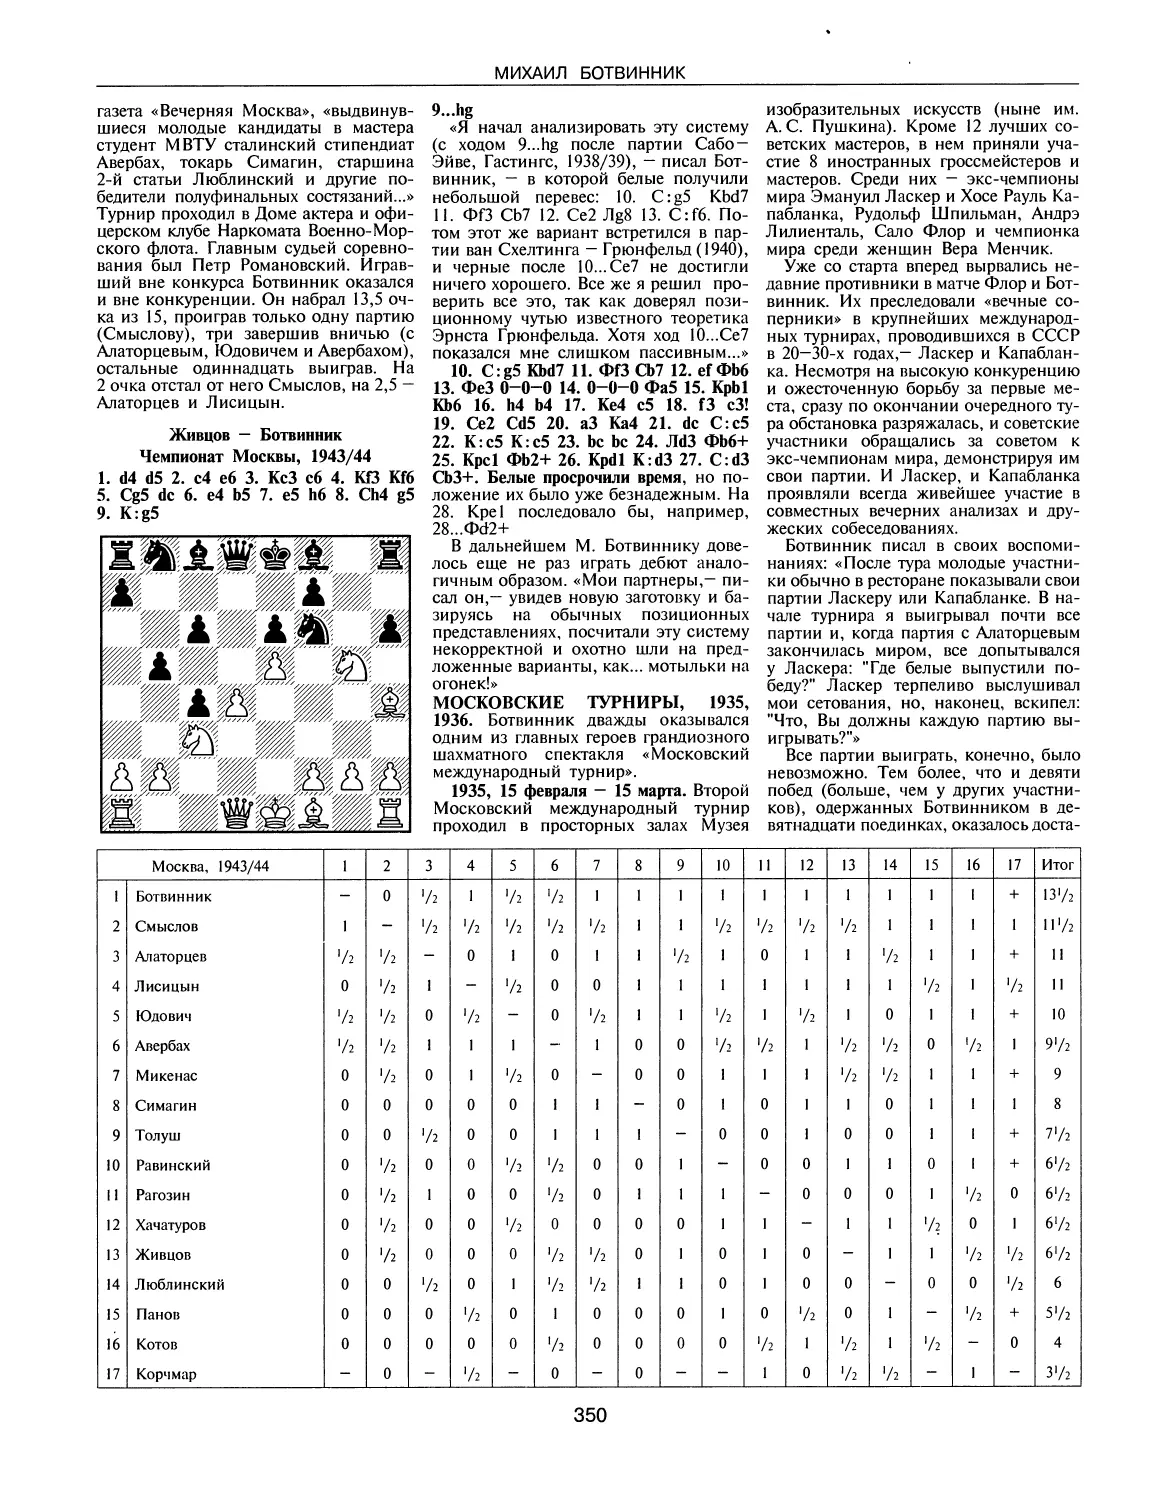 Московские турниры, 1935, 1936